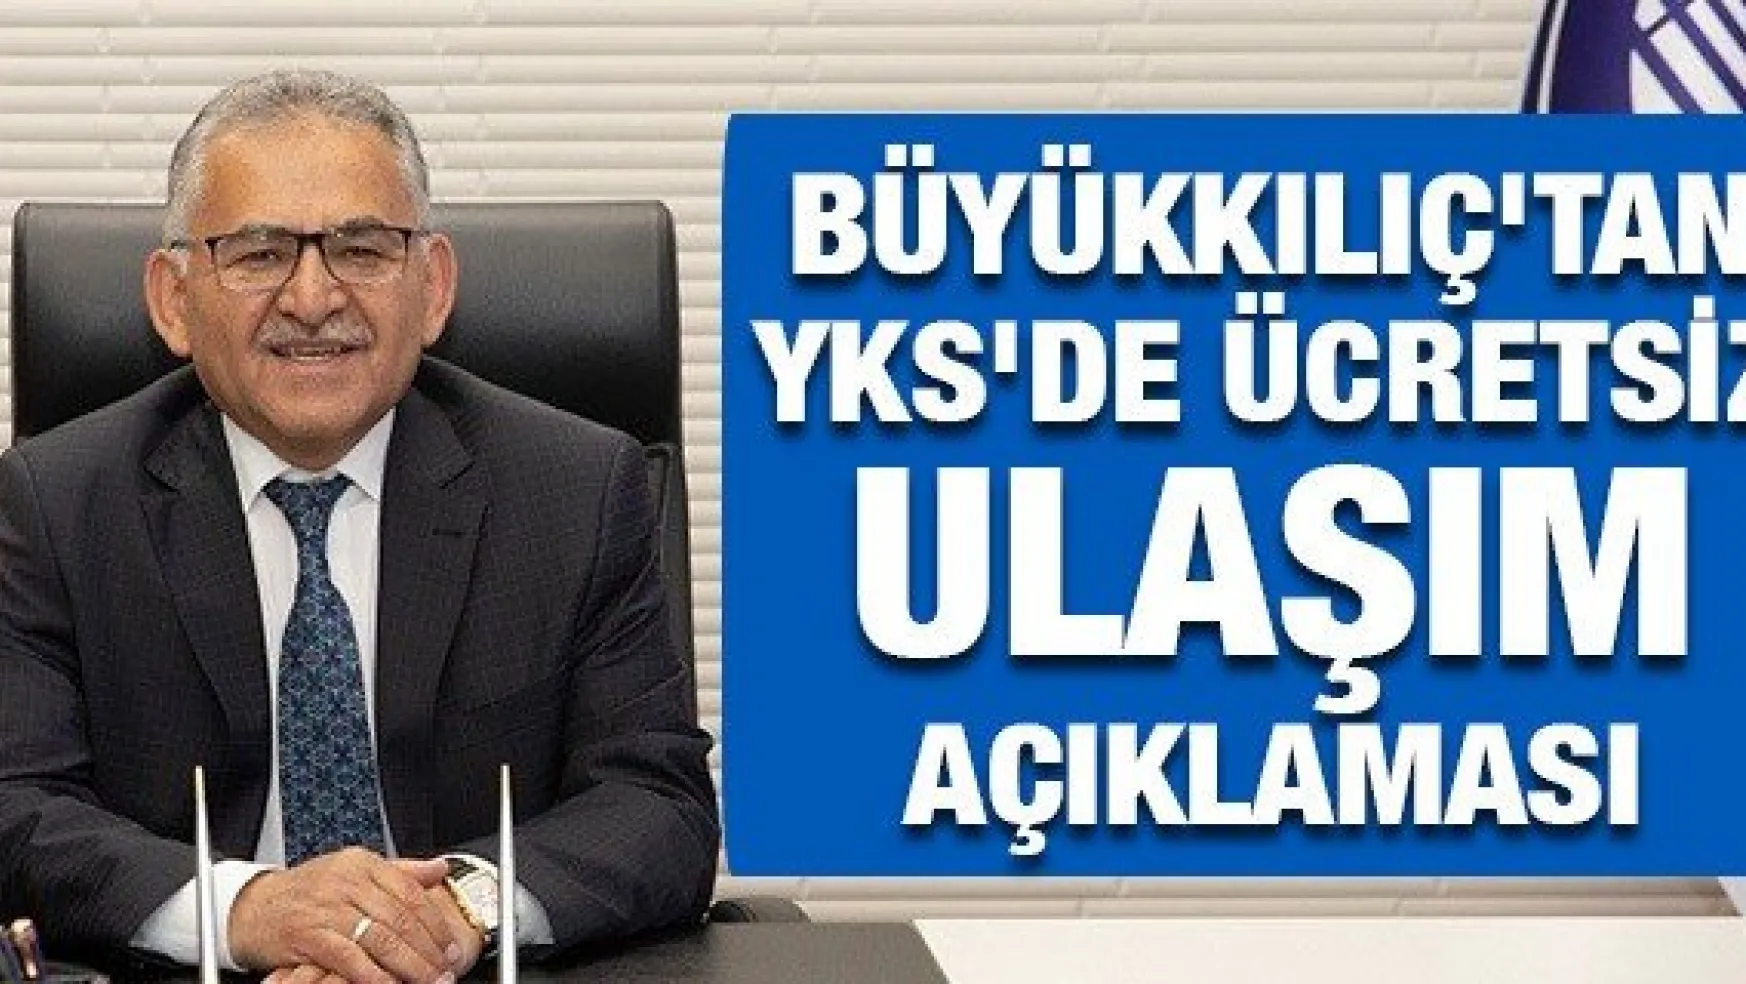 Büyükkılıç'tan YKS'de ücretsiz ulaşım açıklaması